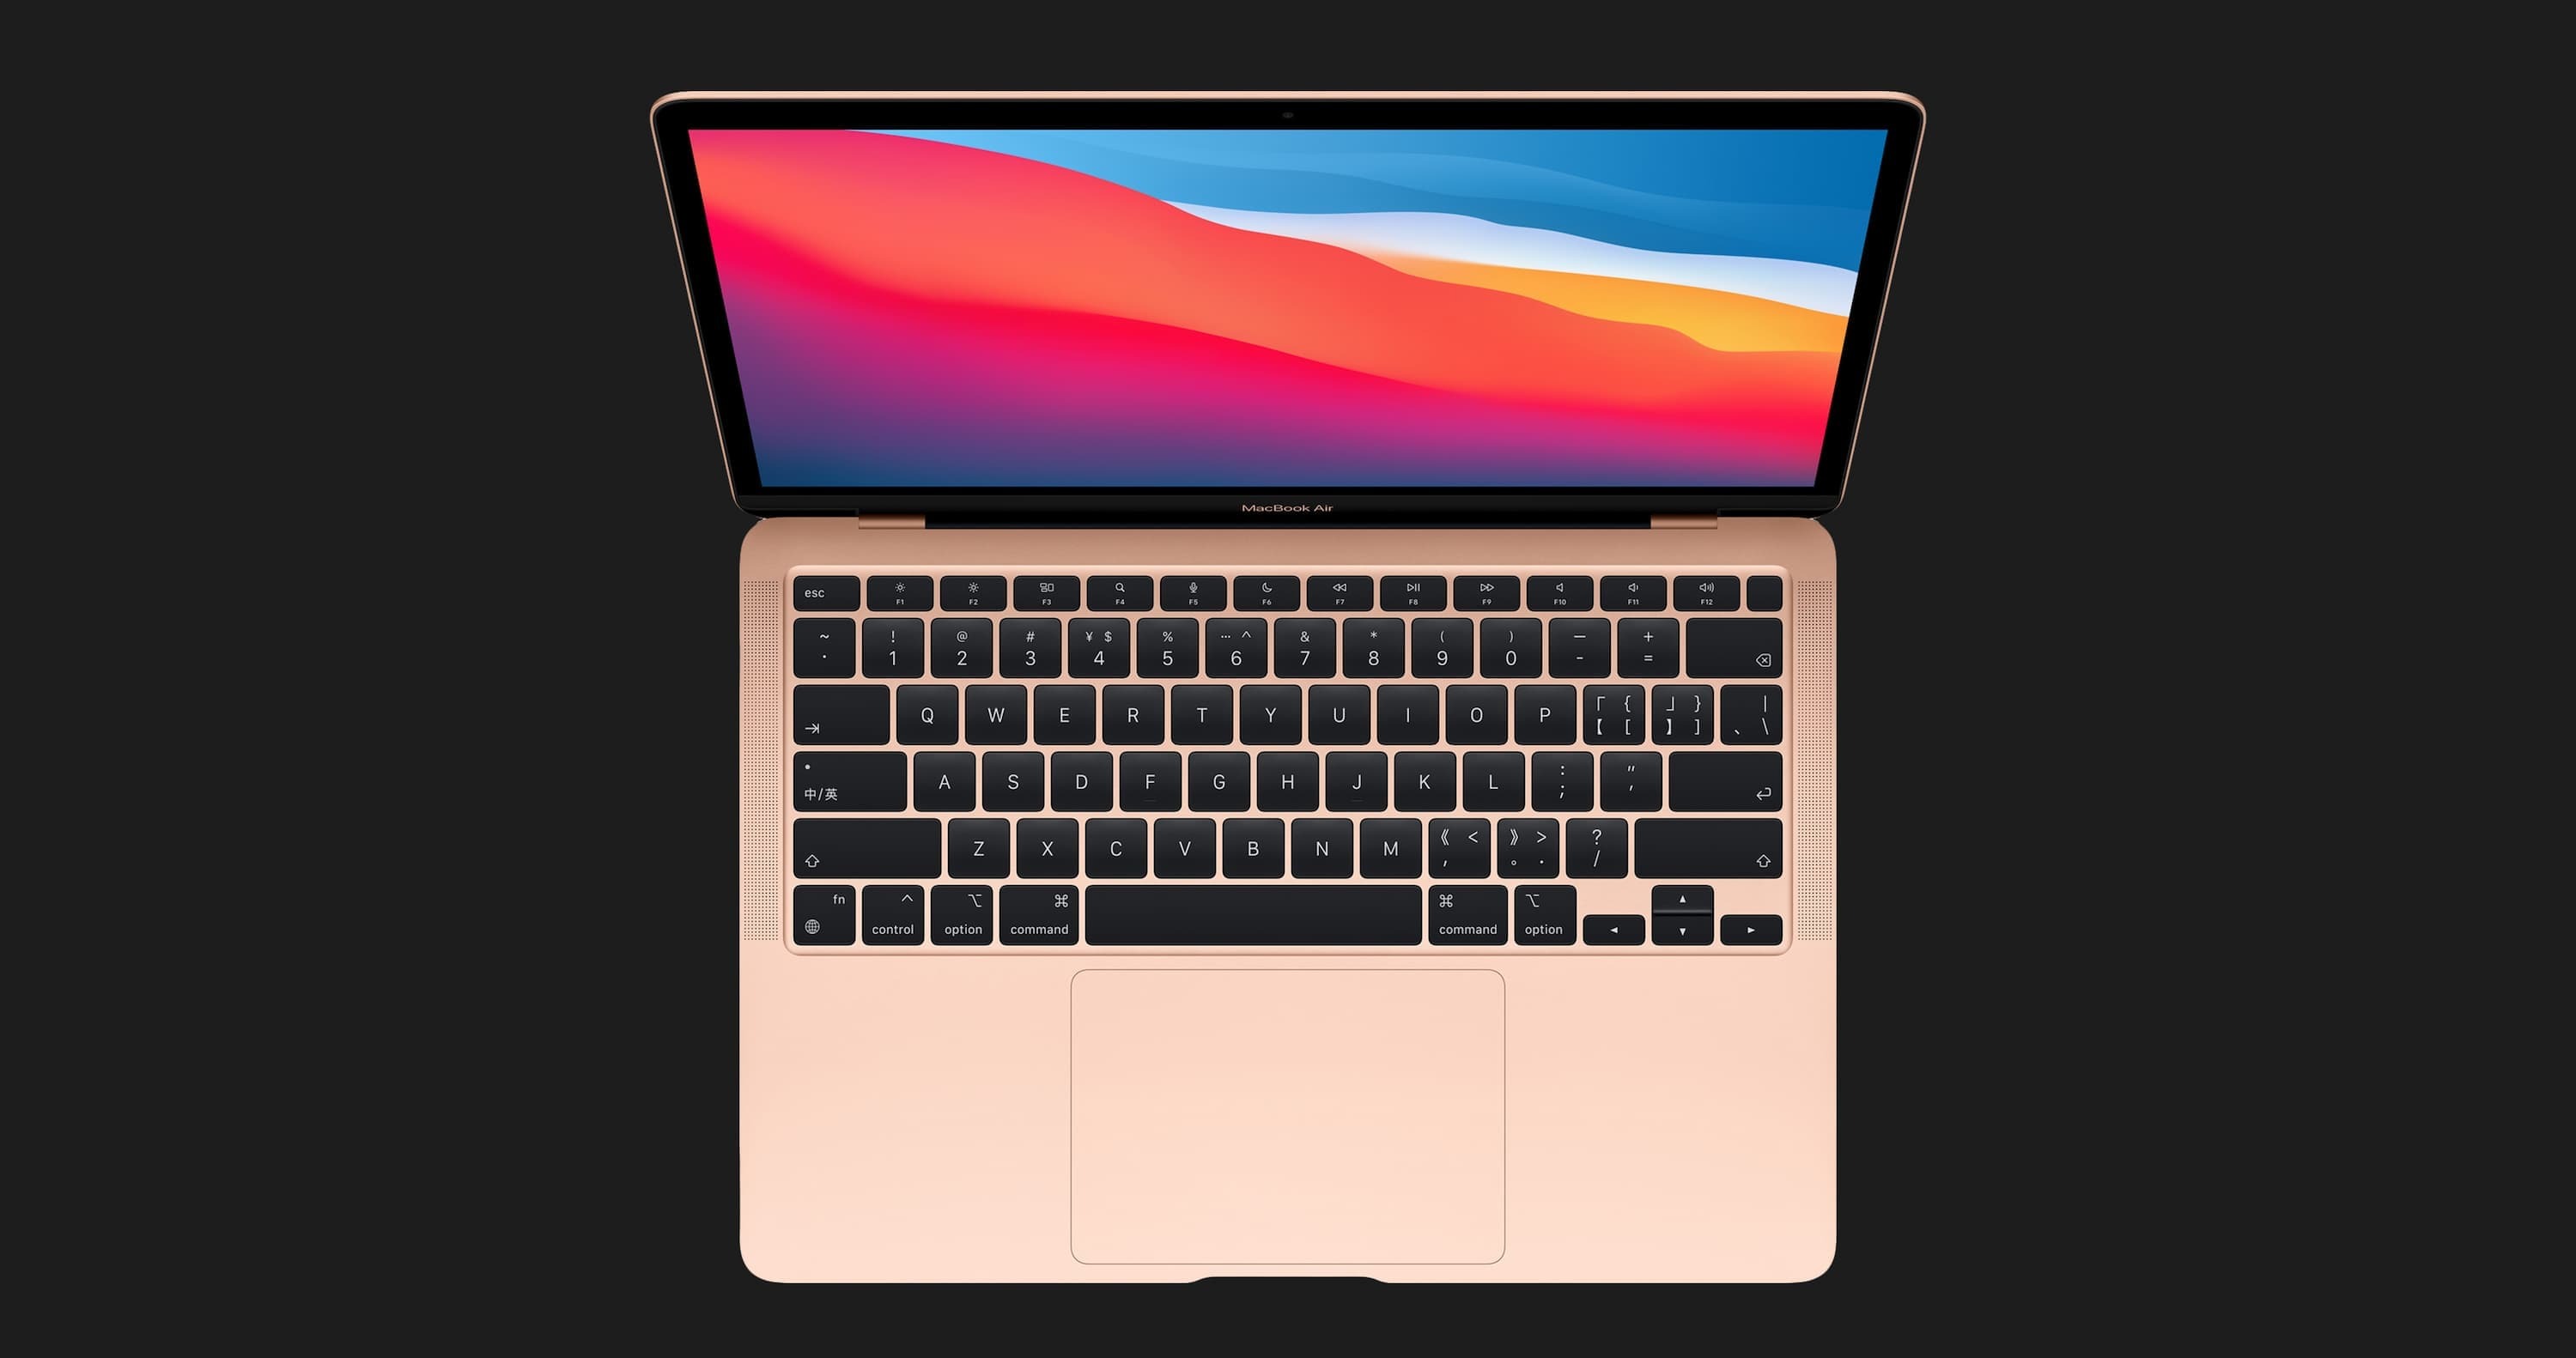 б/у Apple MacBook Air 13, 2020 (256GB) (MWTJ2) (Відмінний стан)